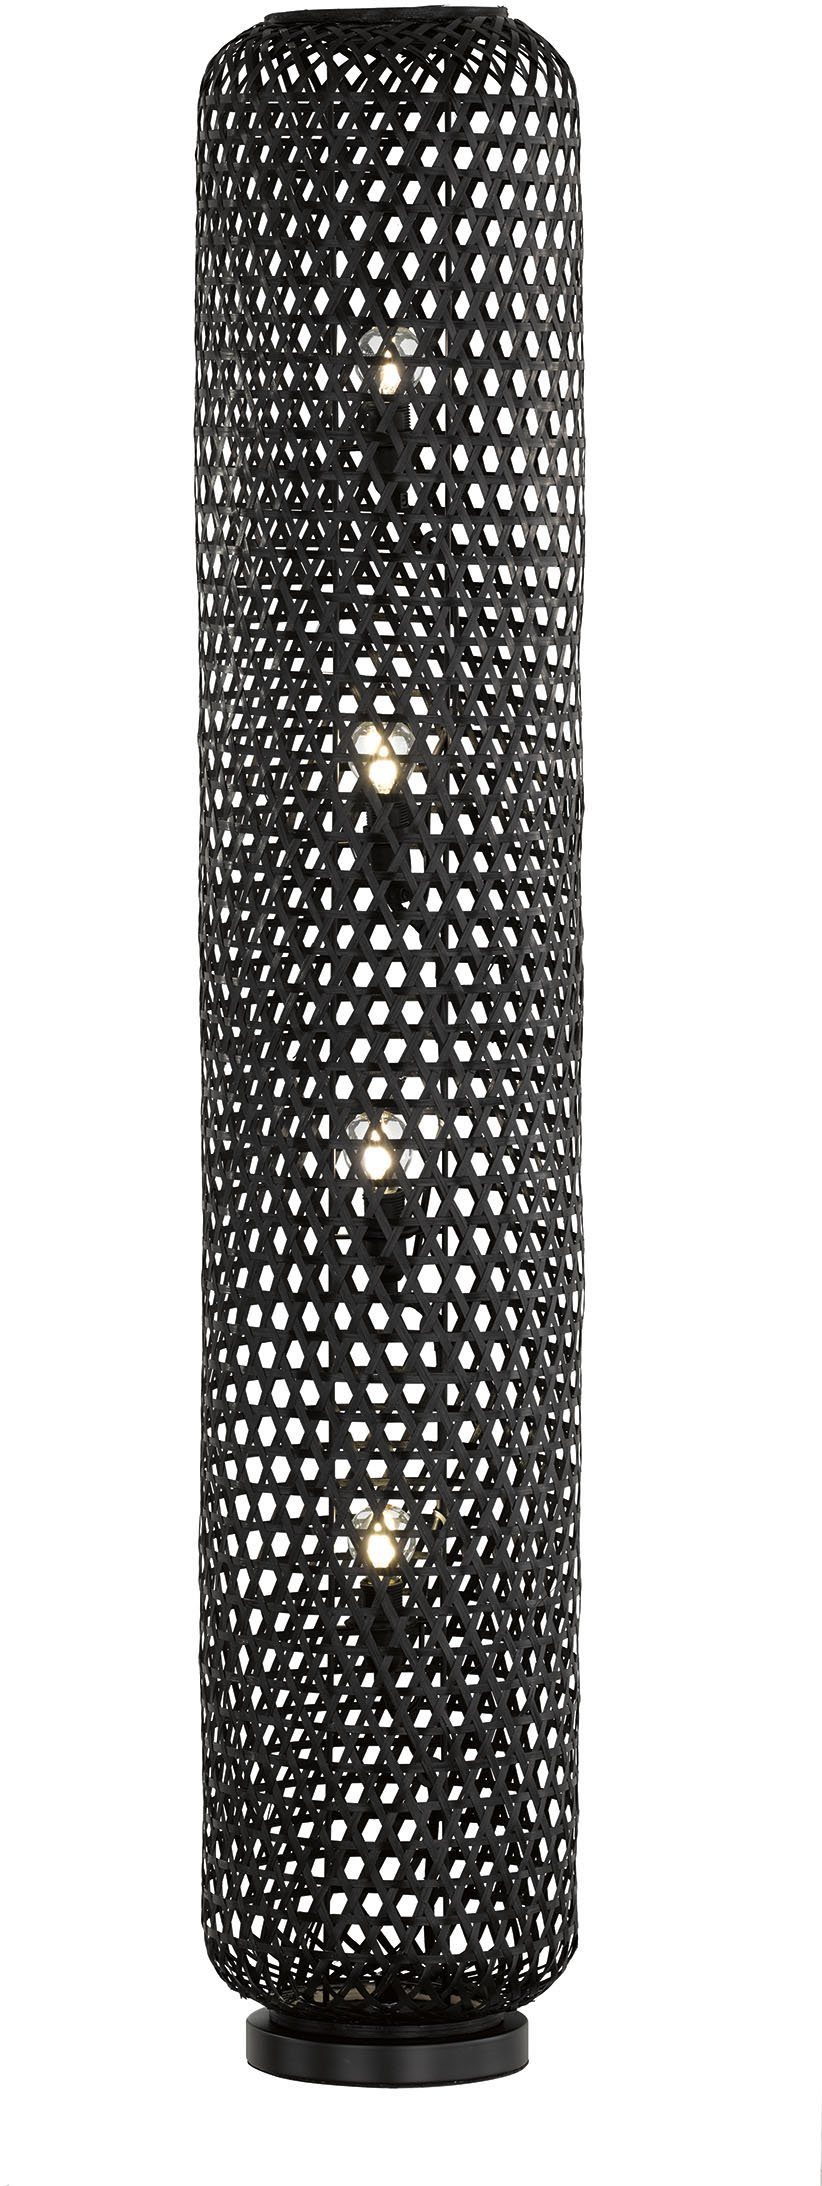 SCHÖNER WOHNEN-Kollektion Stehlampe Calla, Ein-/Ausschalter, Leuchtmittel ohne